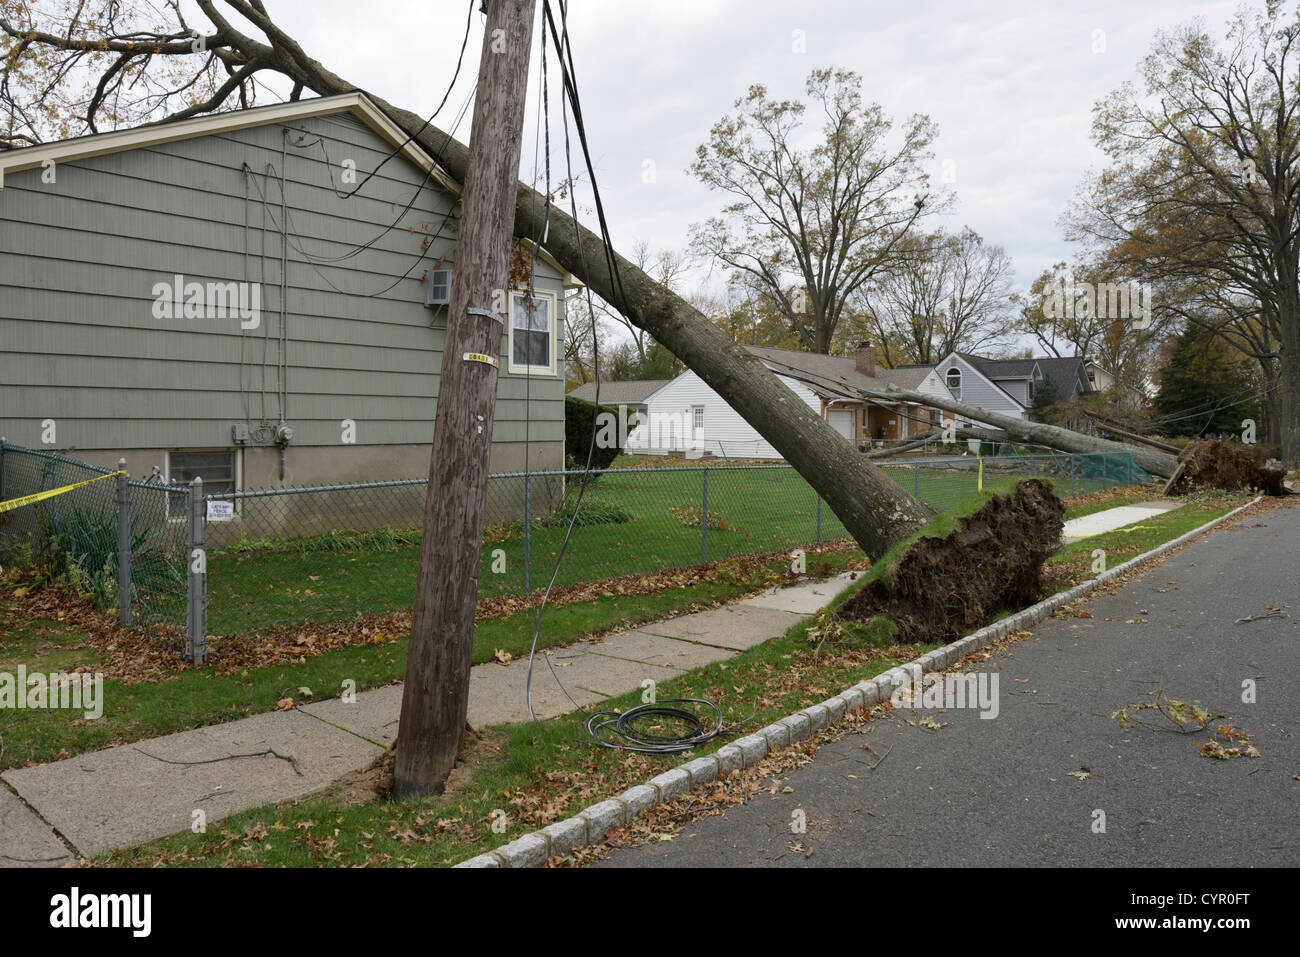 La destrucción de casas, árboles y líneas eléctricas provocadas por el huracán arenosa, norte de Nueva Jersey Foto de stock